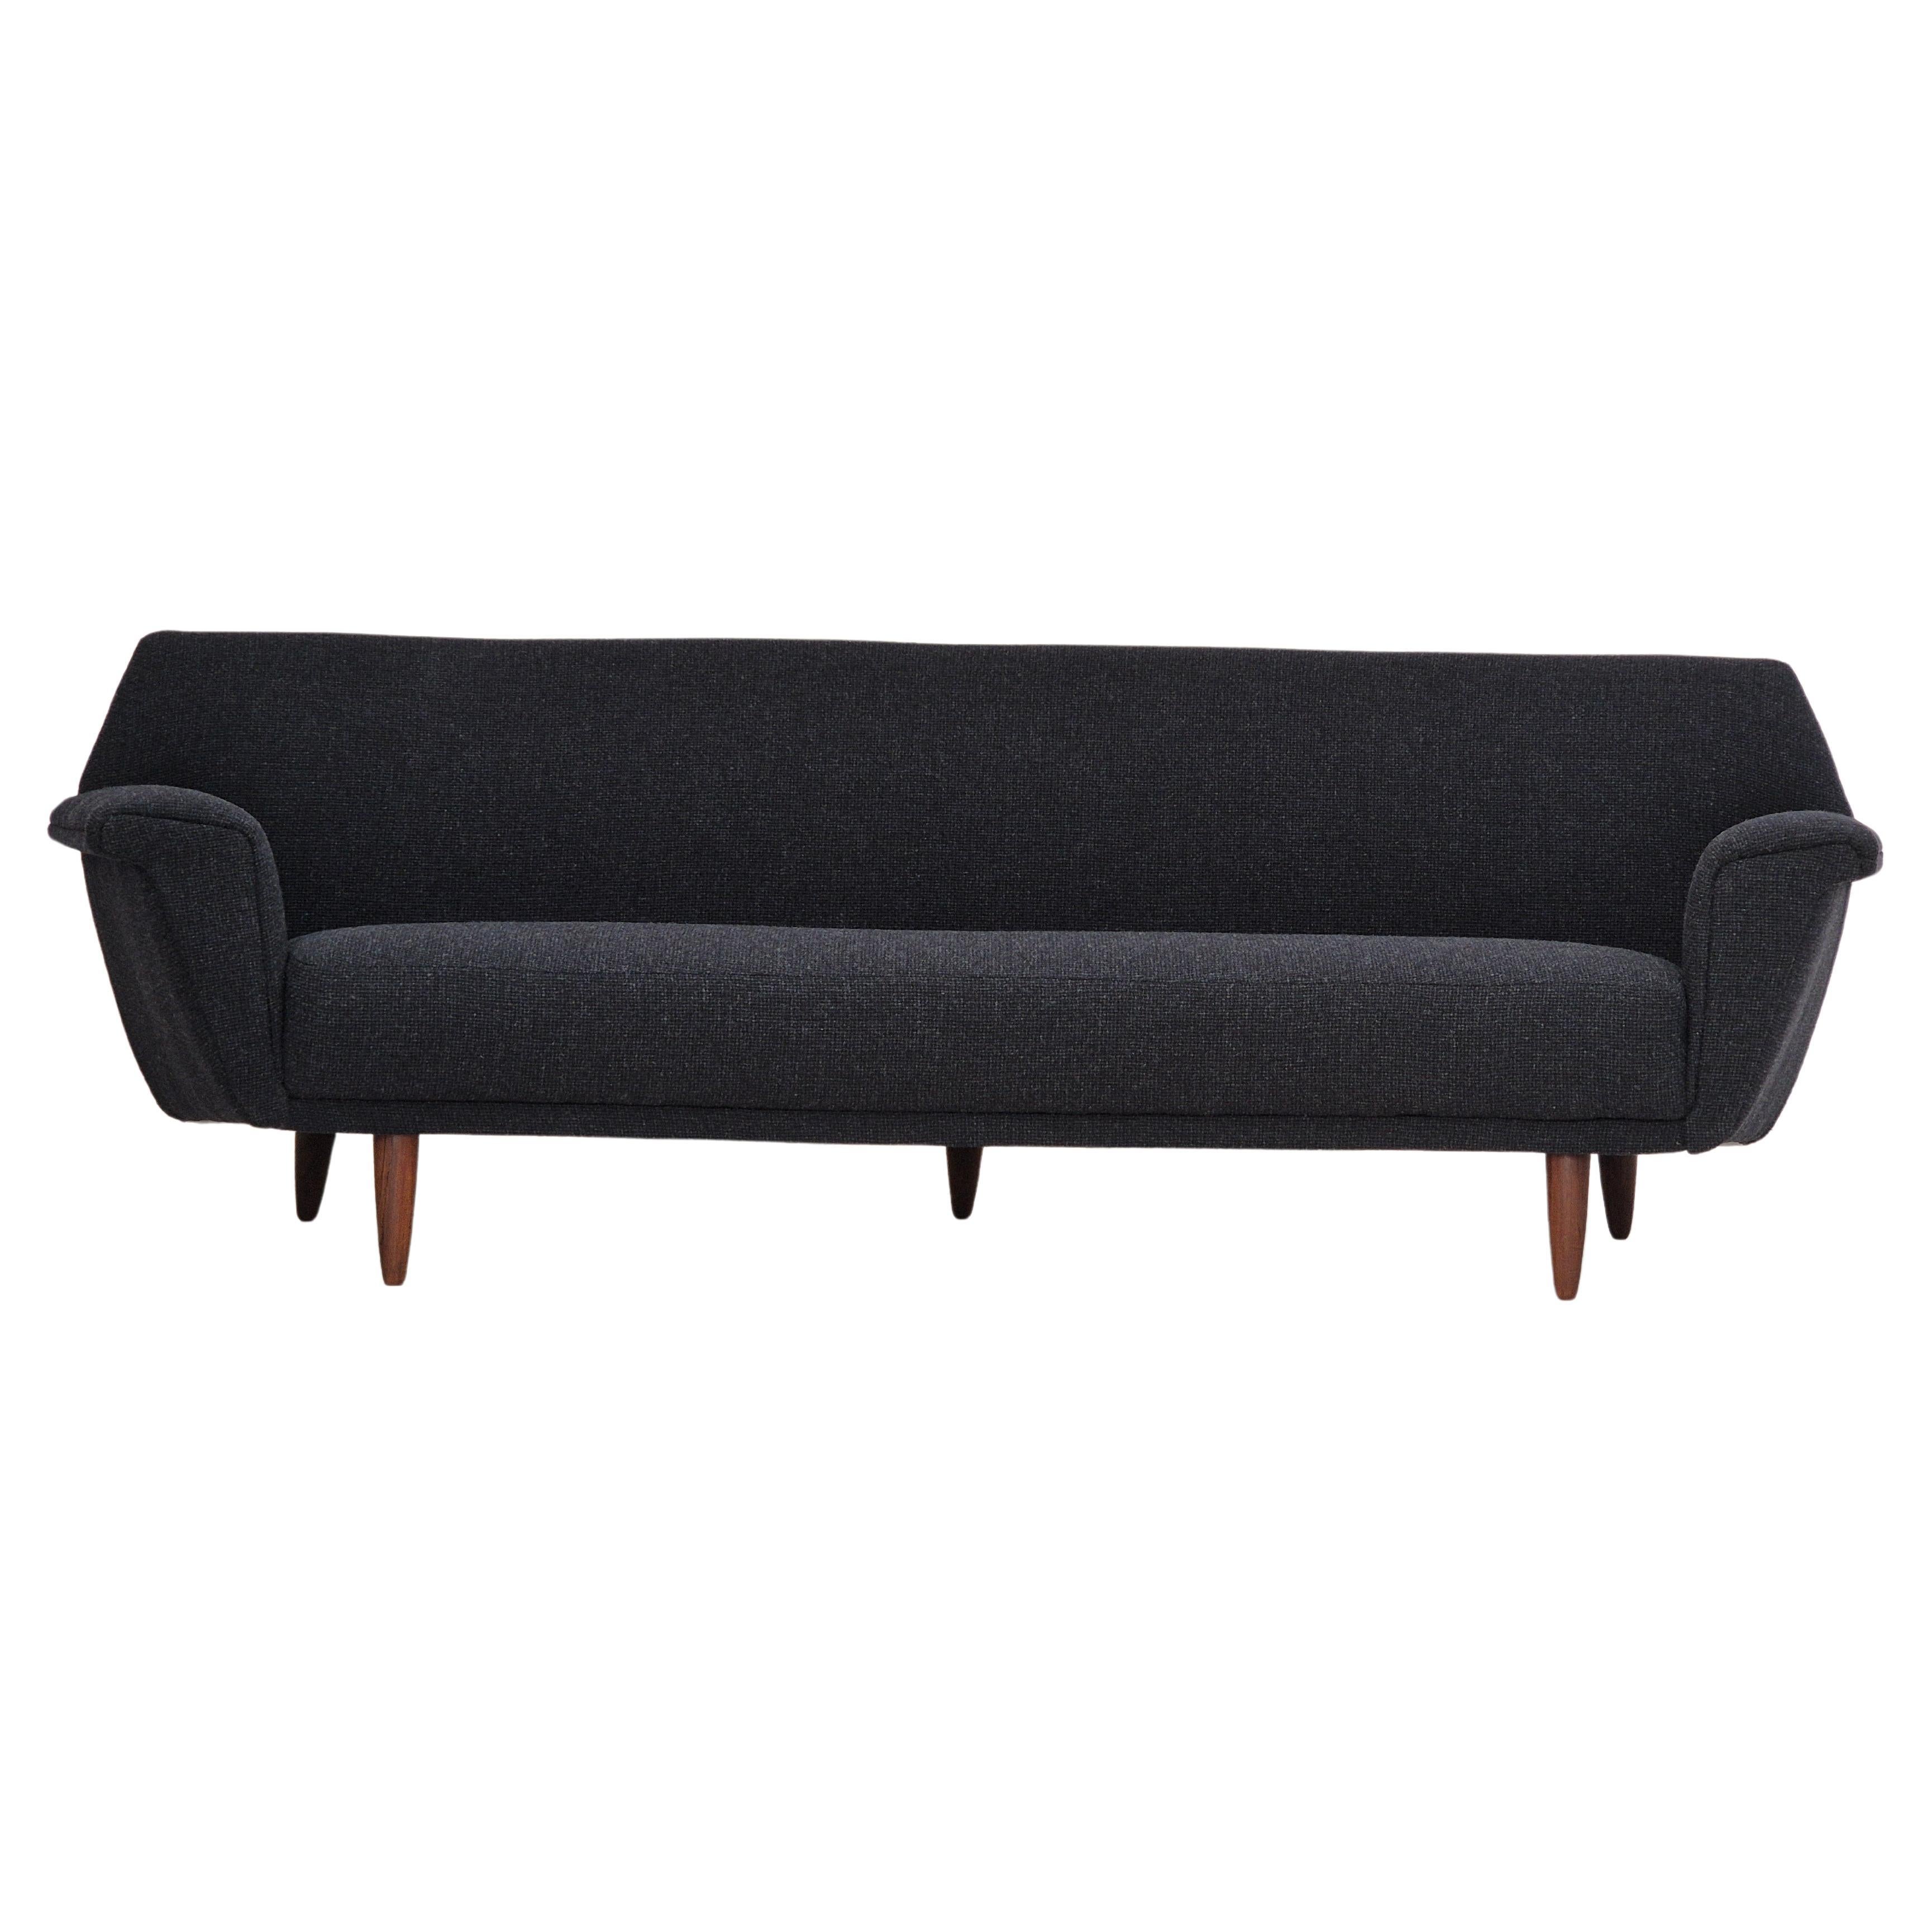 1960er Jahre, dänisches Design von Georg Thams, neu gepolstertes 3-Sitzer-Sofa.